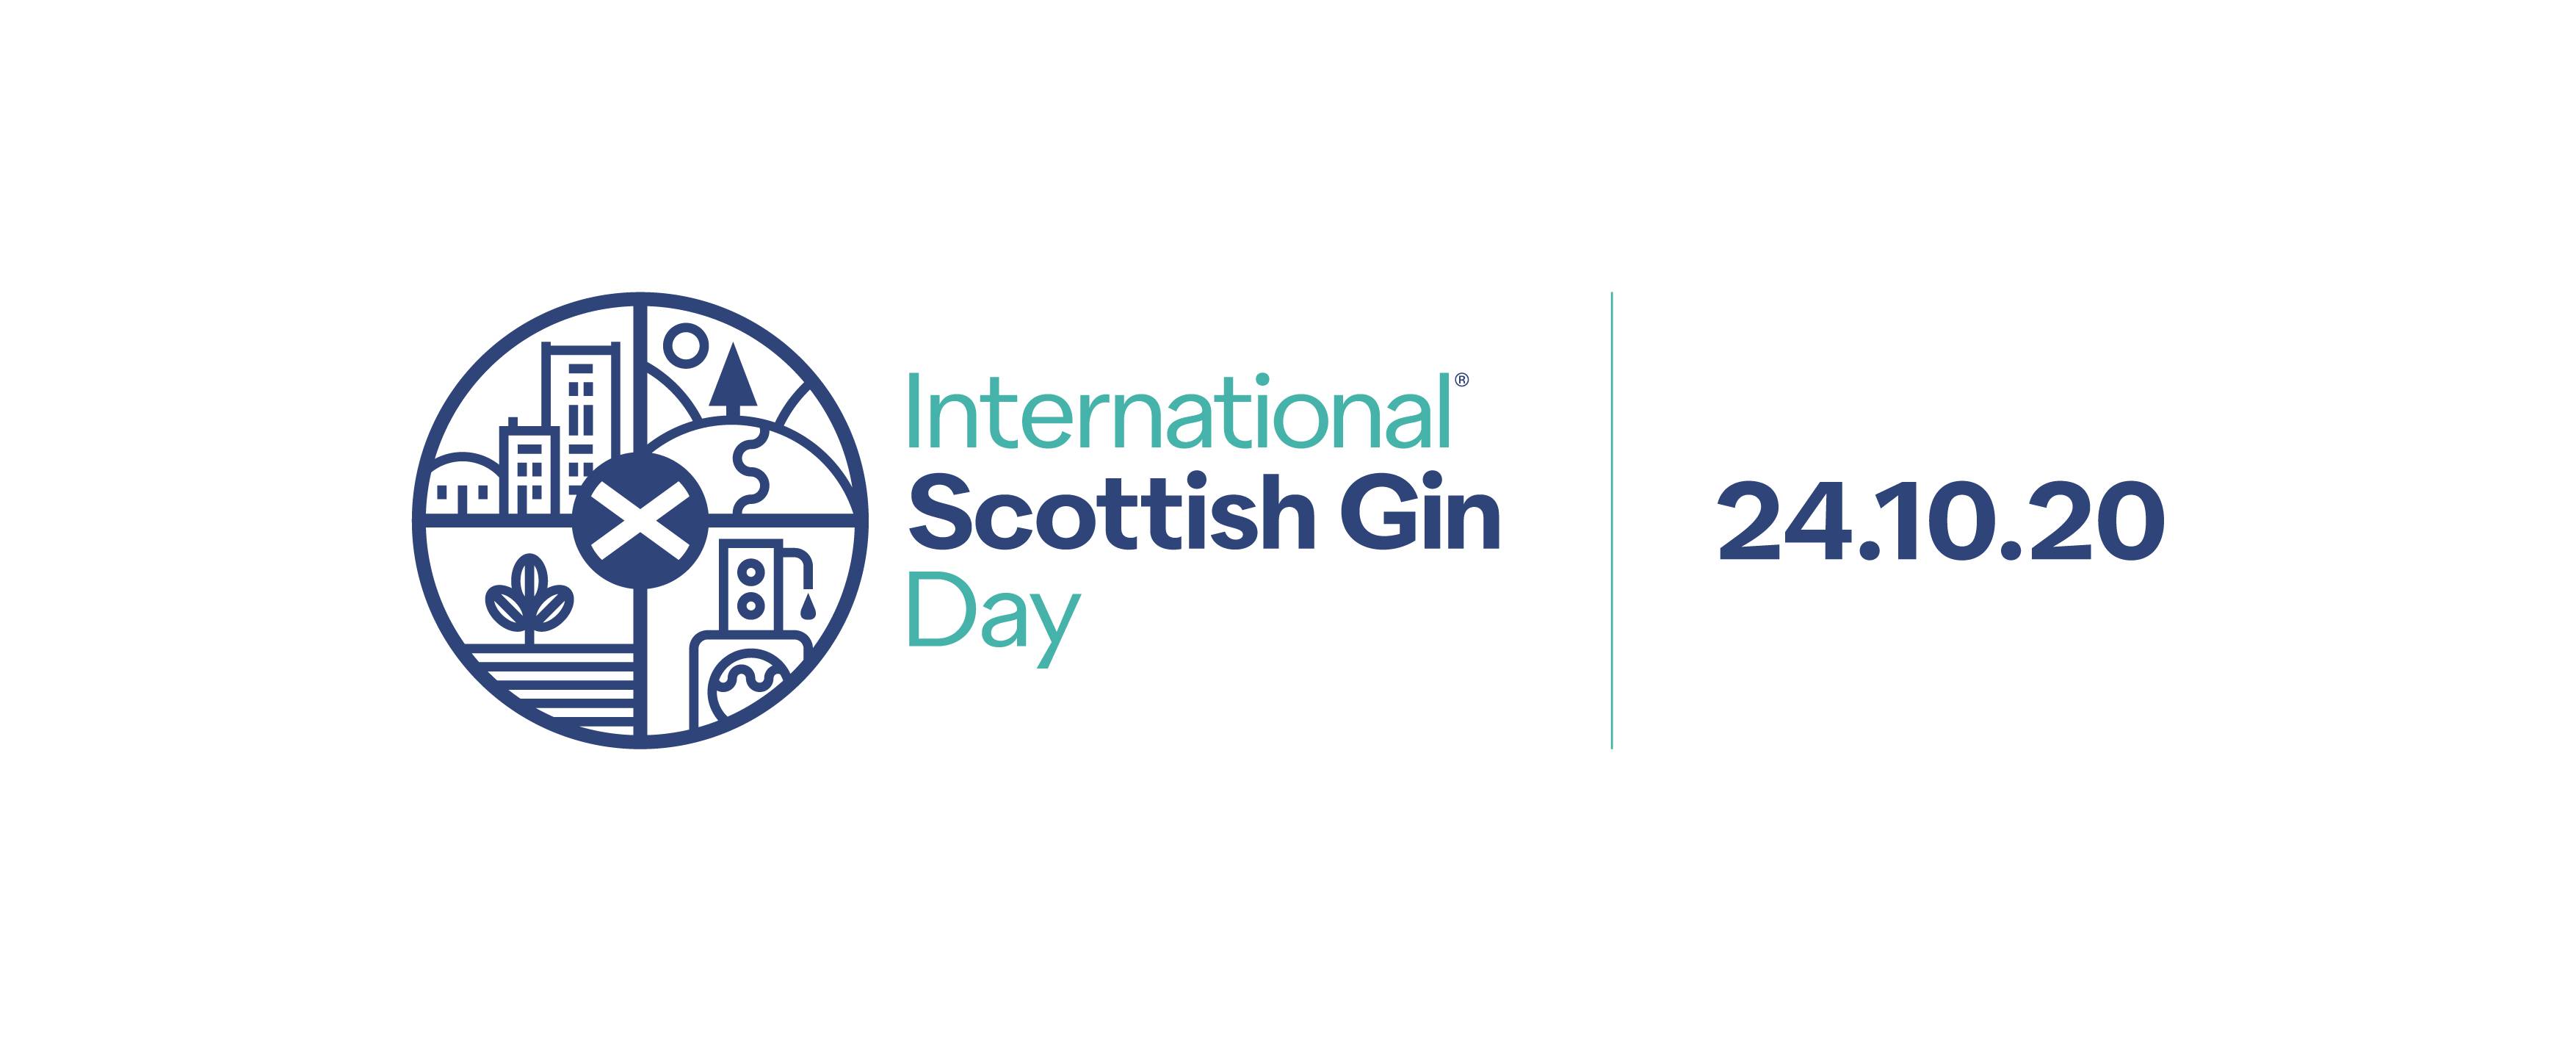 international scottish gin day